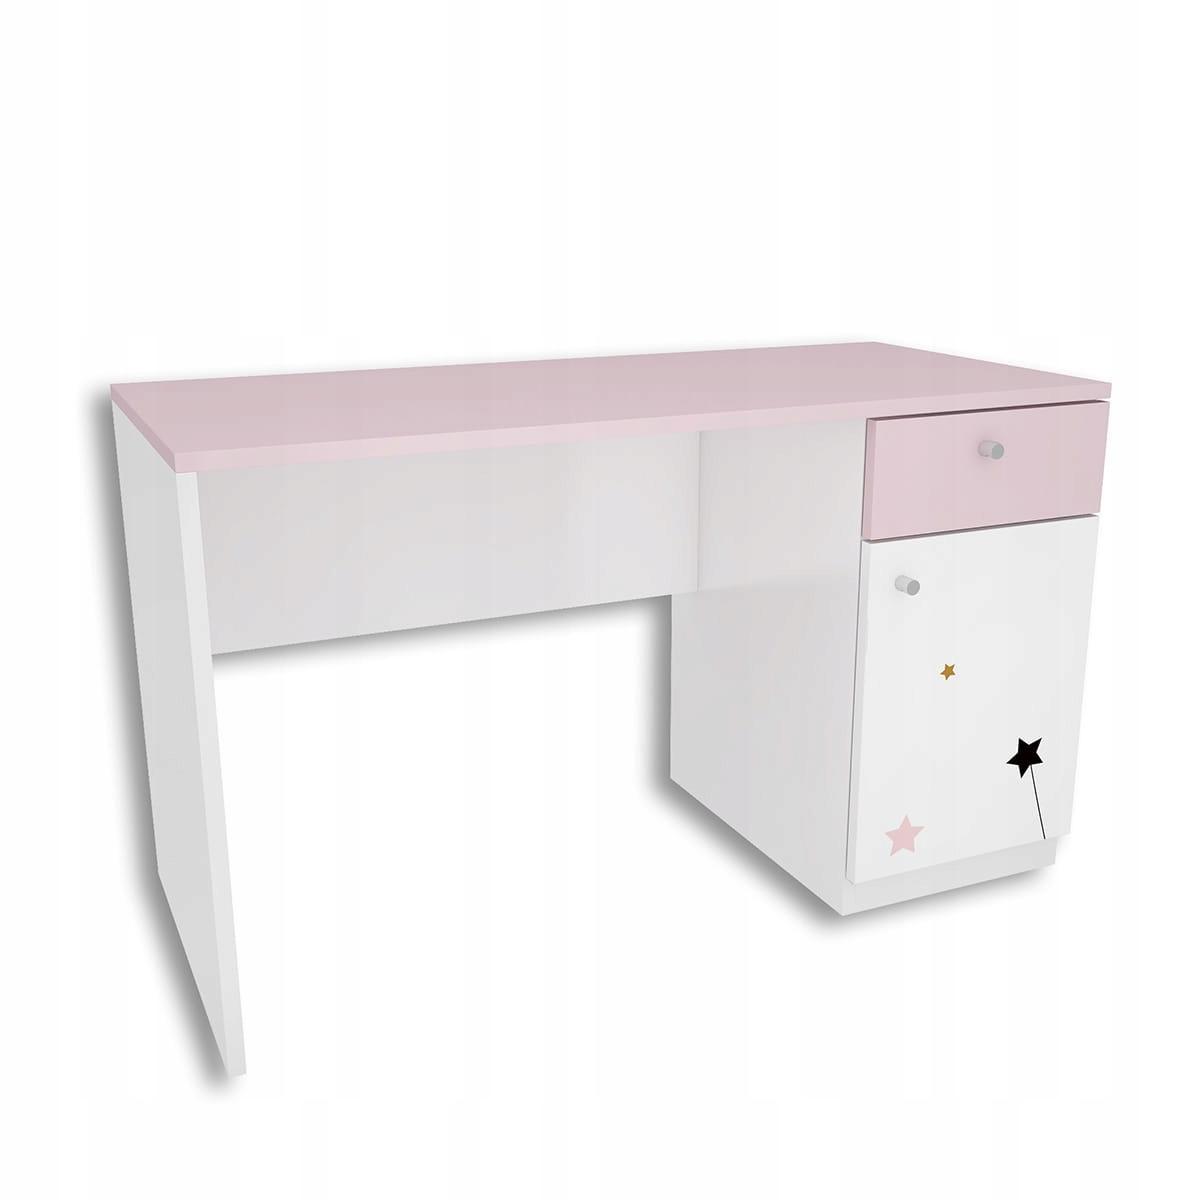 Zestaw 4 szt mebli FAIRY biało różowe szafa, biurko, 2 szafki wiszące dla dziecka  nr. 3